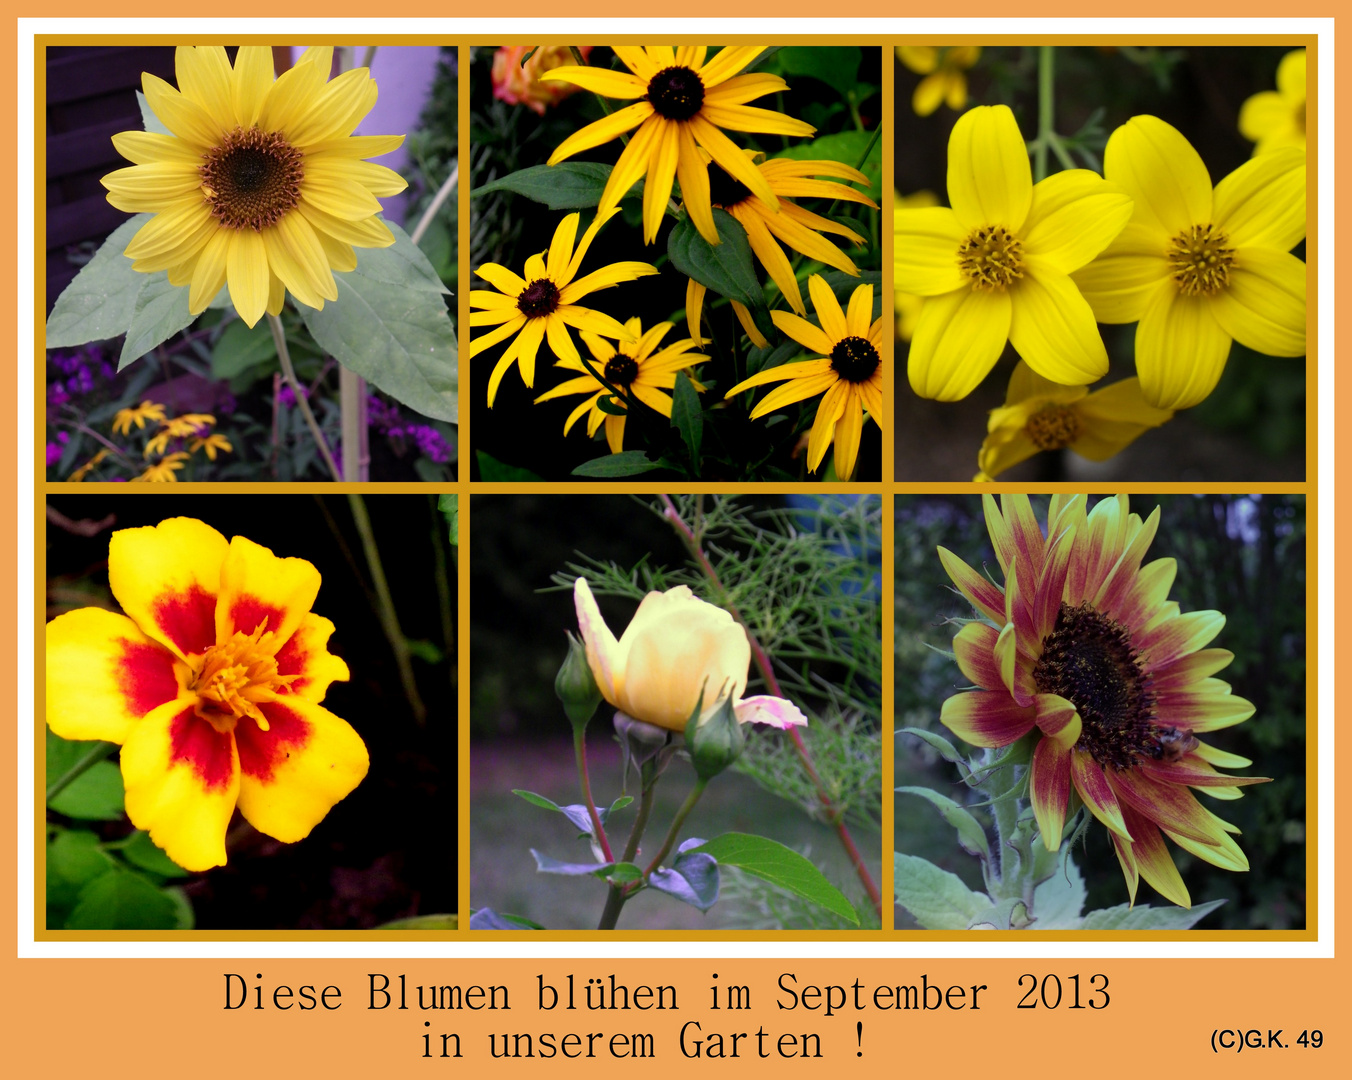 Diese Blumen erfreuen uns auch im September 2013 !